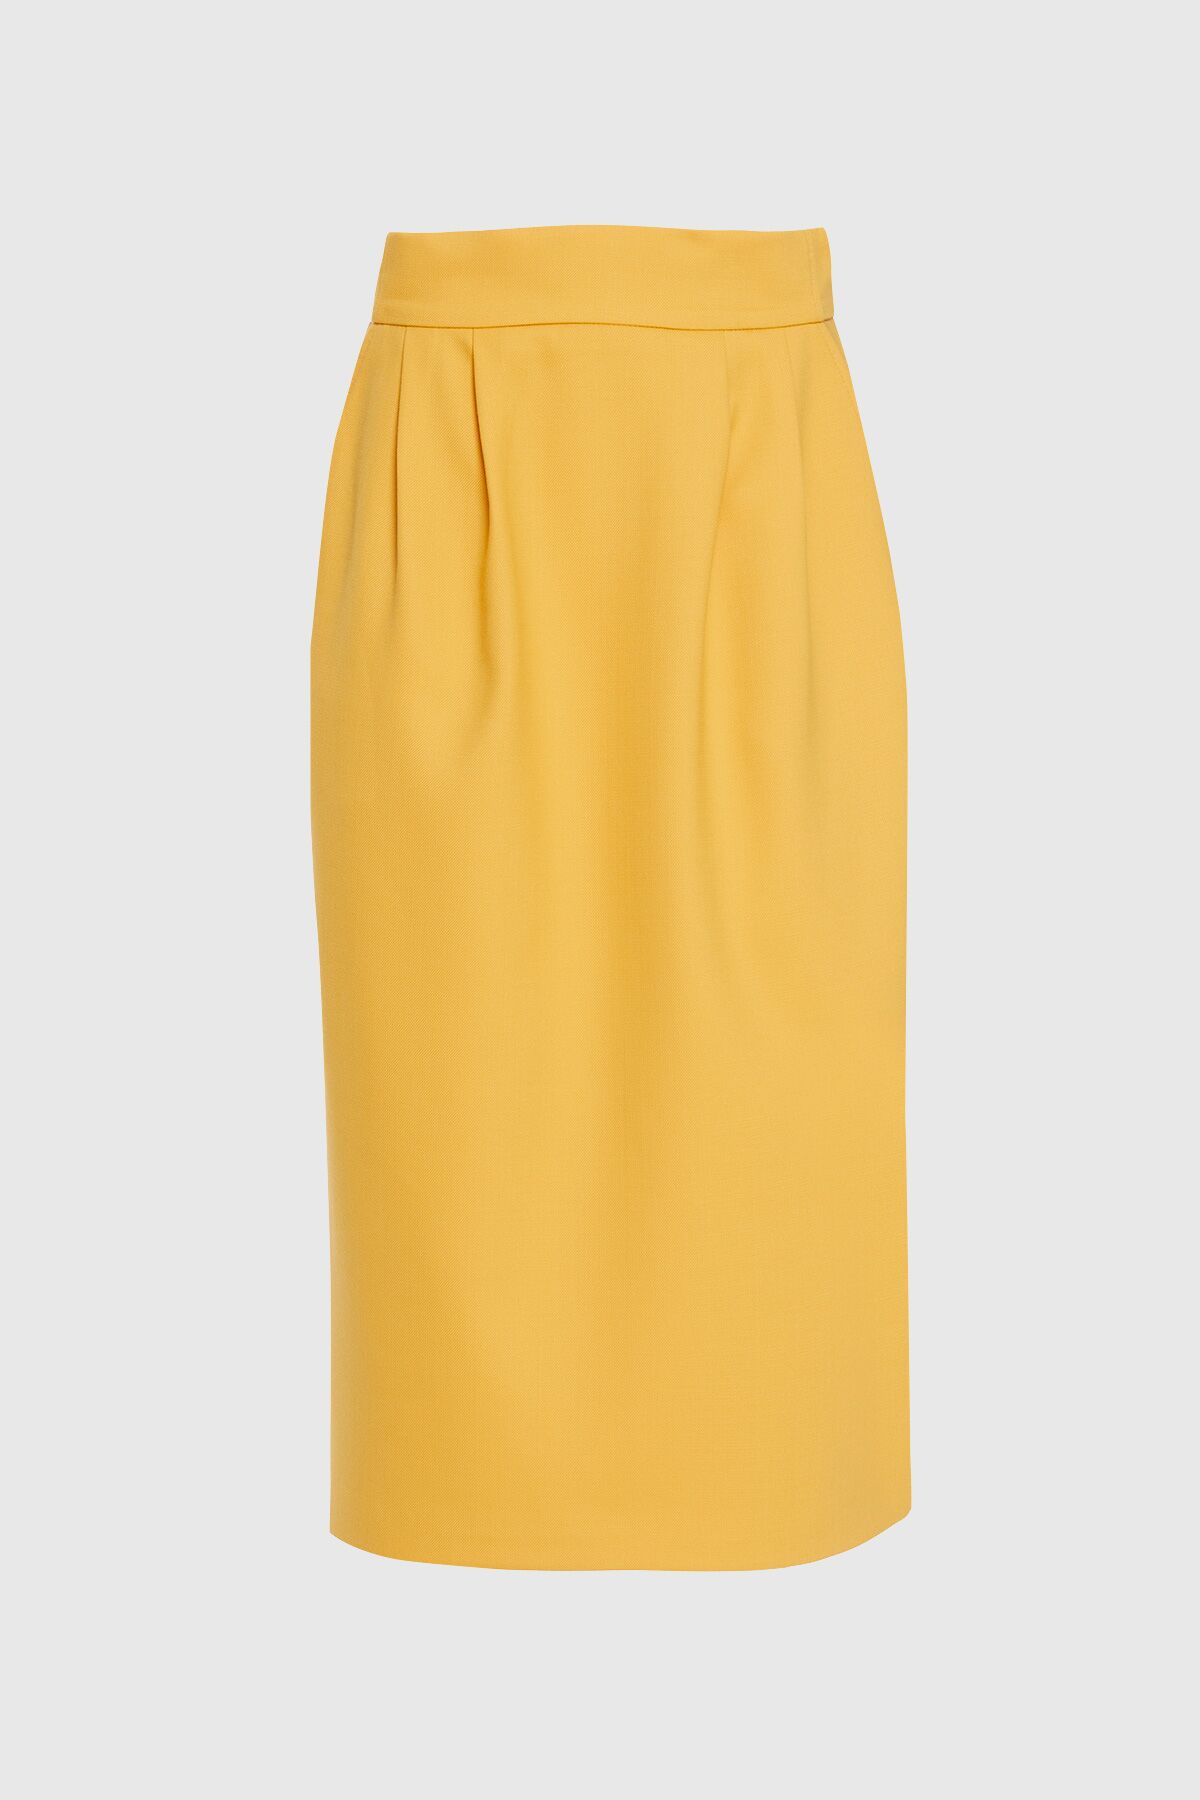  GIZIA - High Waist Yellow Pencil Skirt